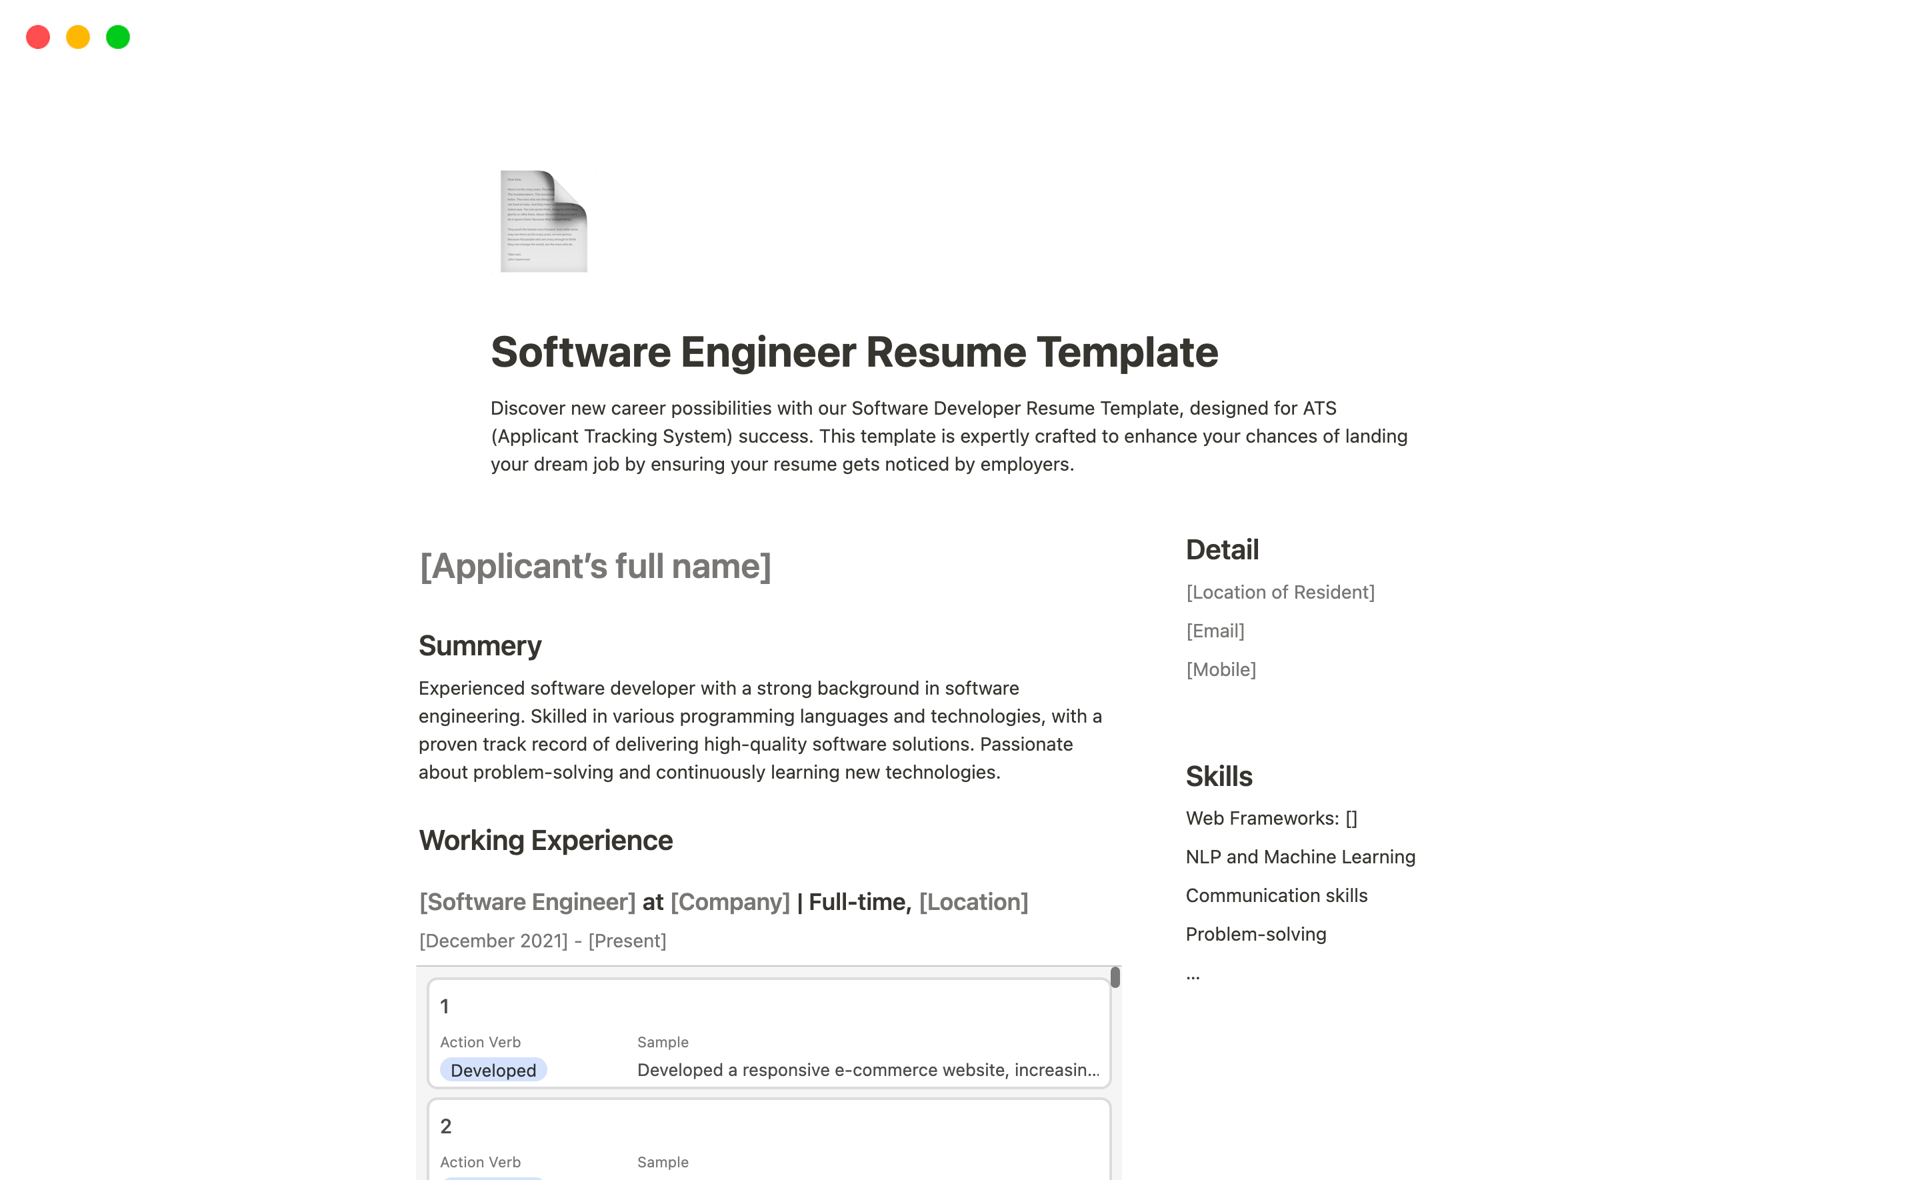 En förhandsgranskning av mallen för Software Engineer Resume